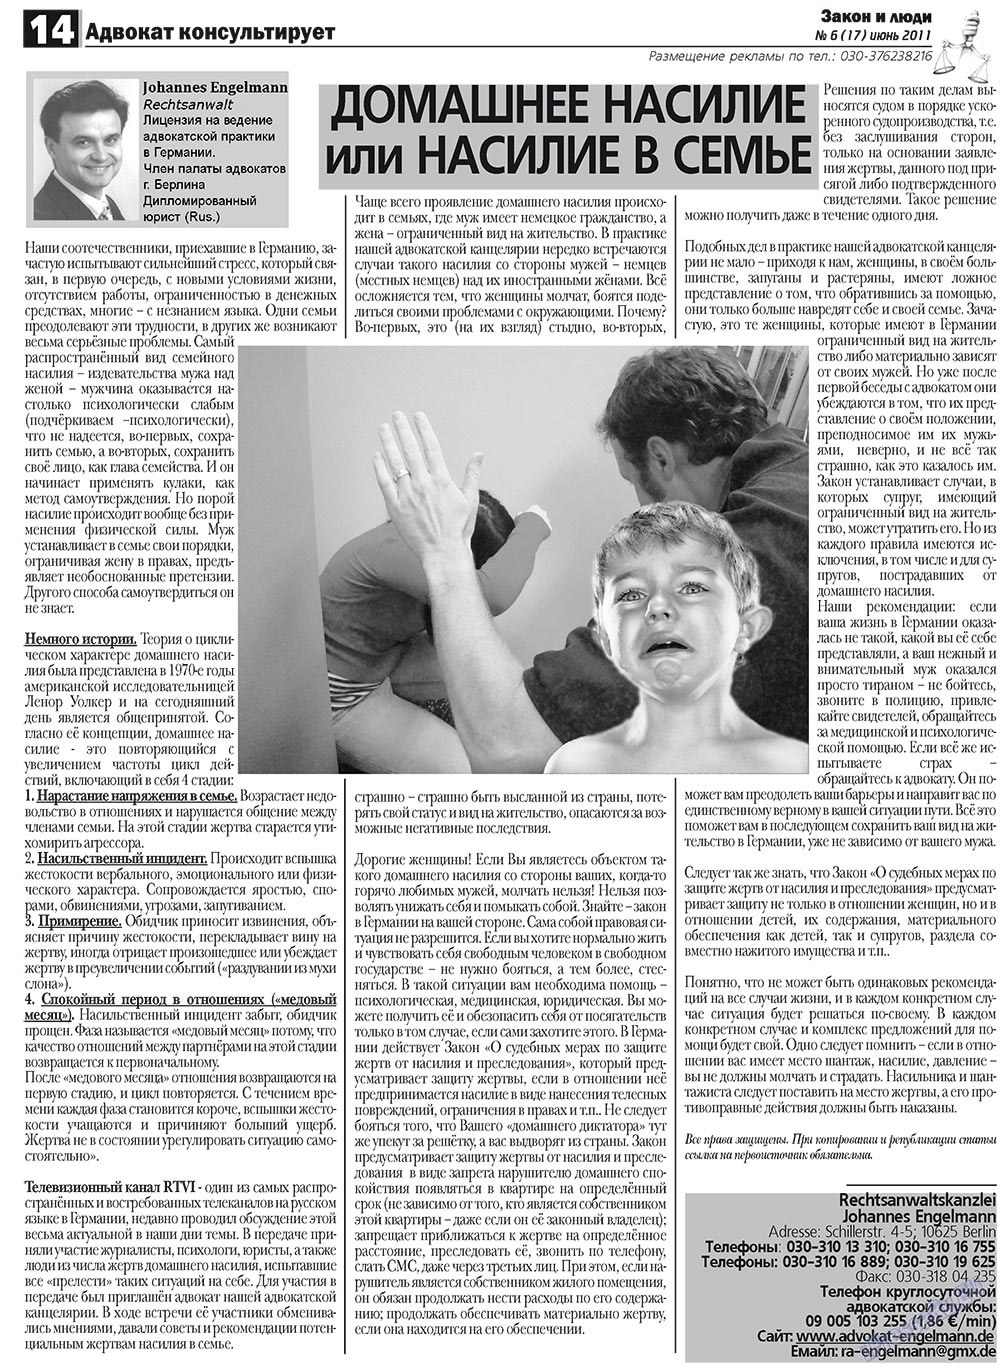 Закон и люди (газета). 2011 год, номер 6, стр. 14